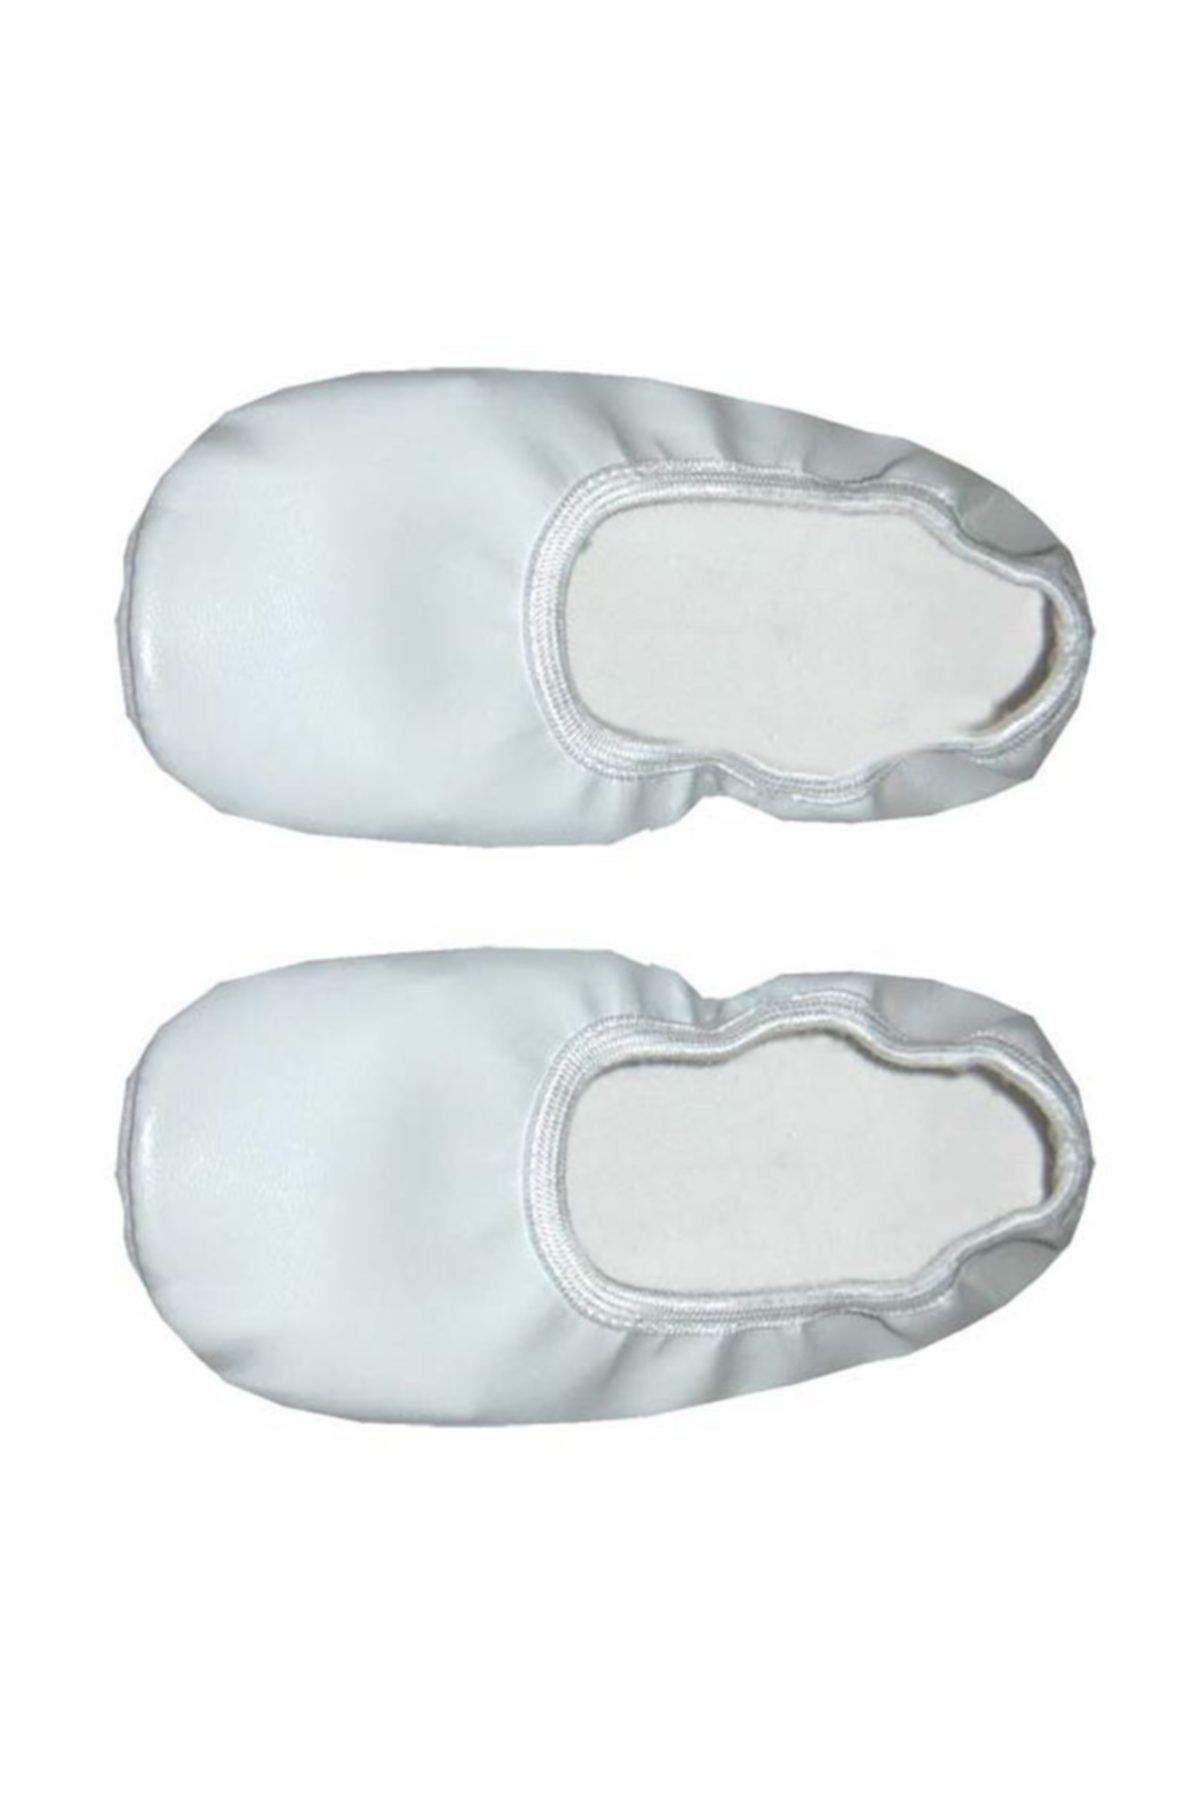 Pandoli Çocuk Pisi Pisi Ayakkabısı Beyaz Renk 27 Numara